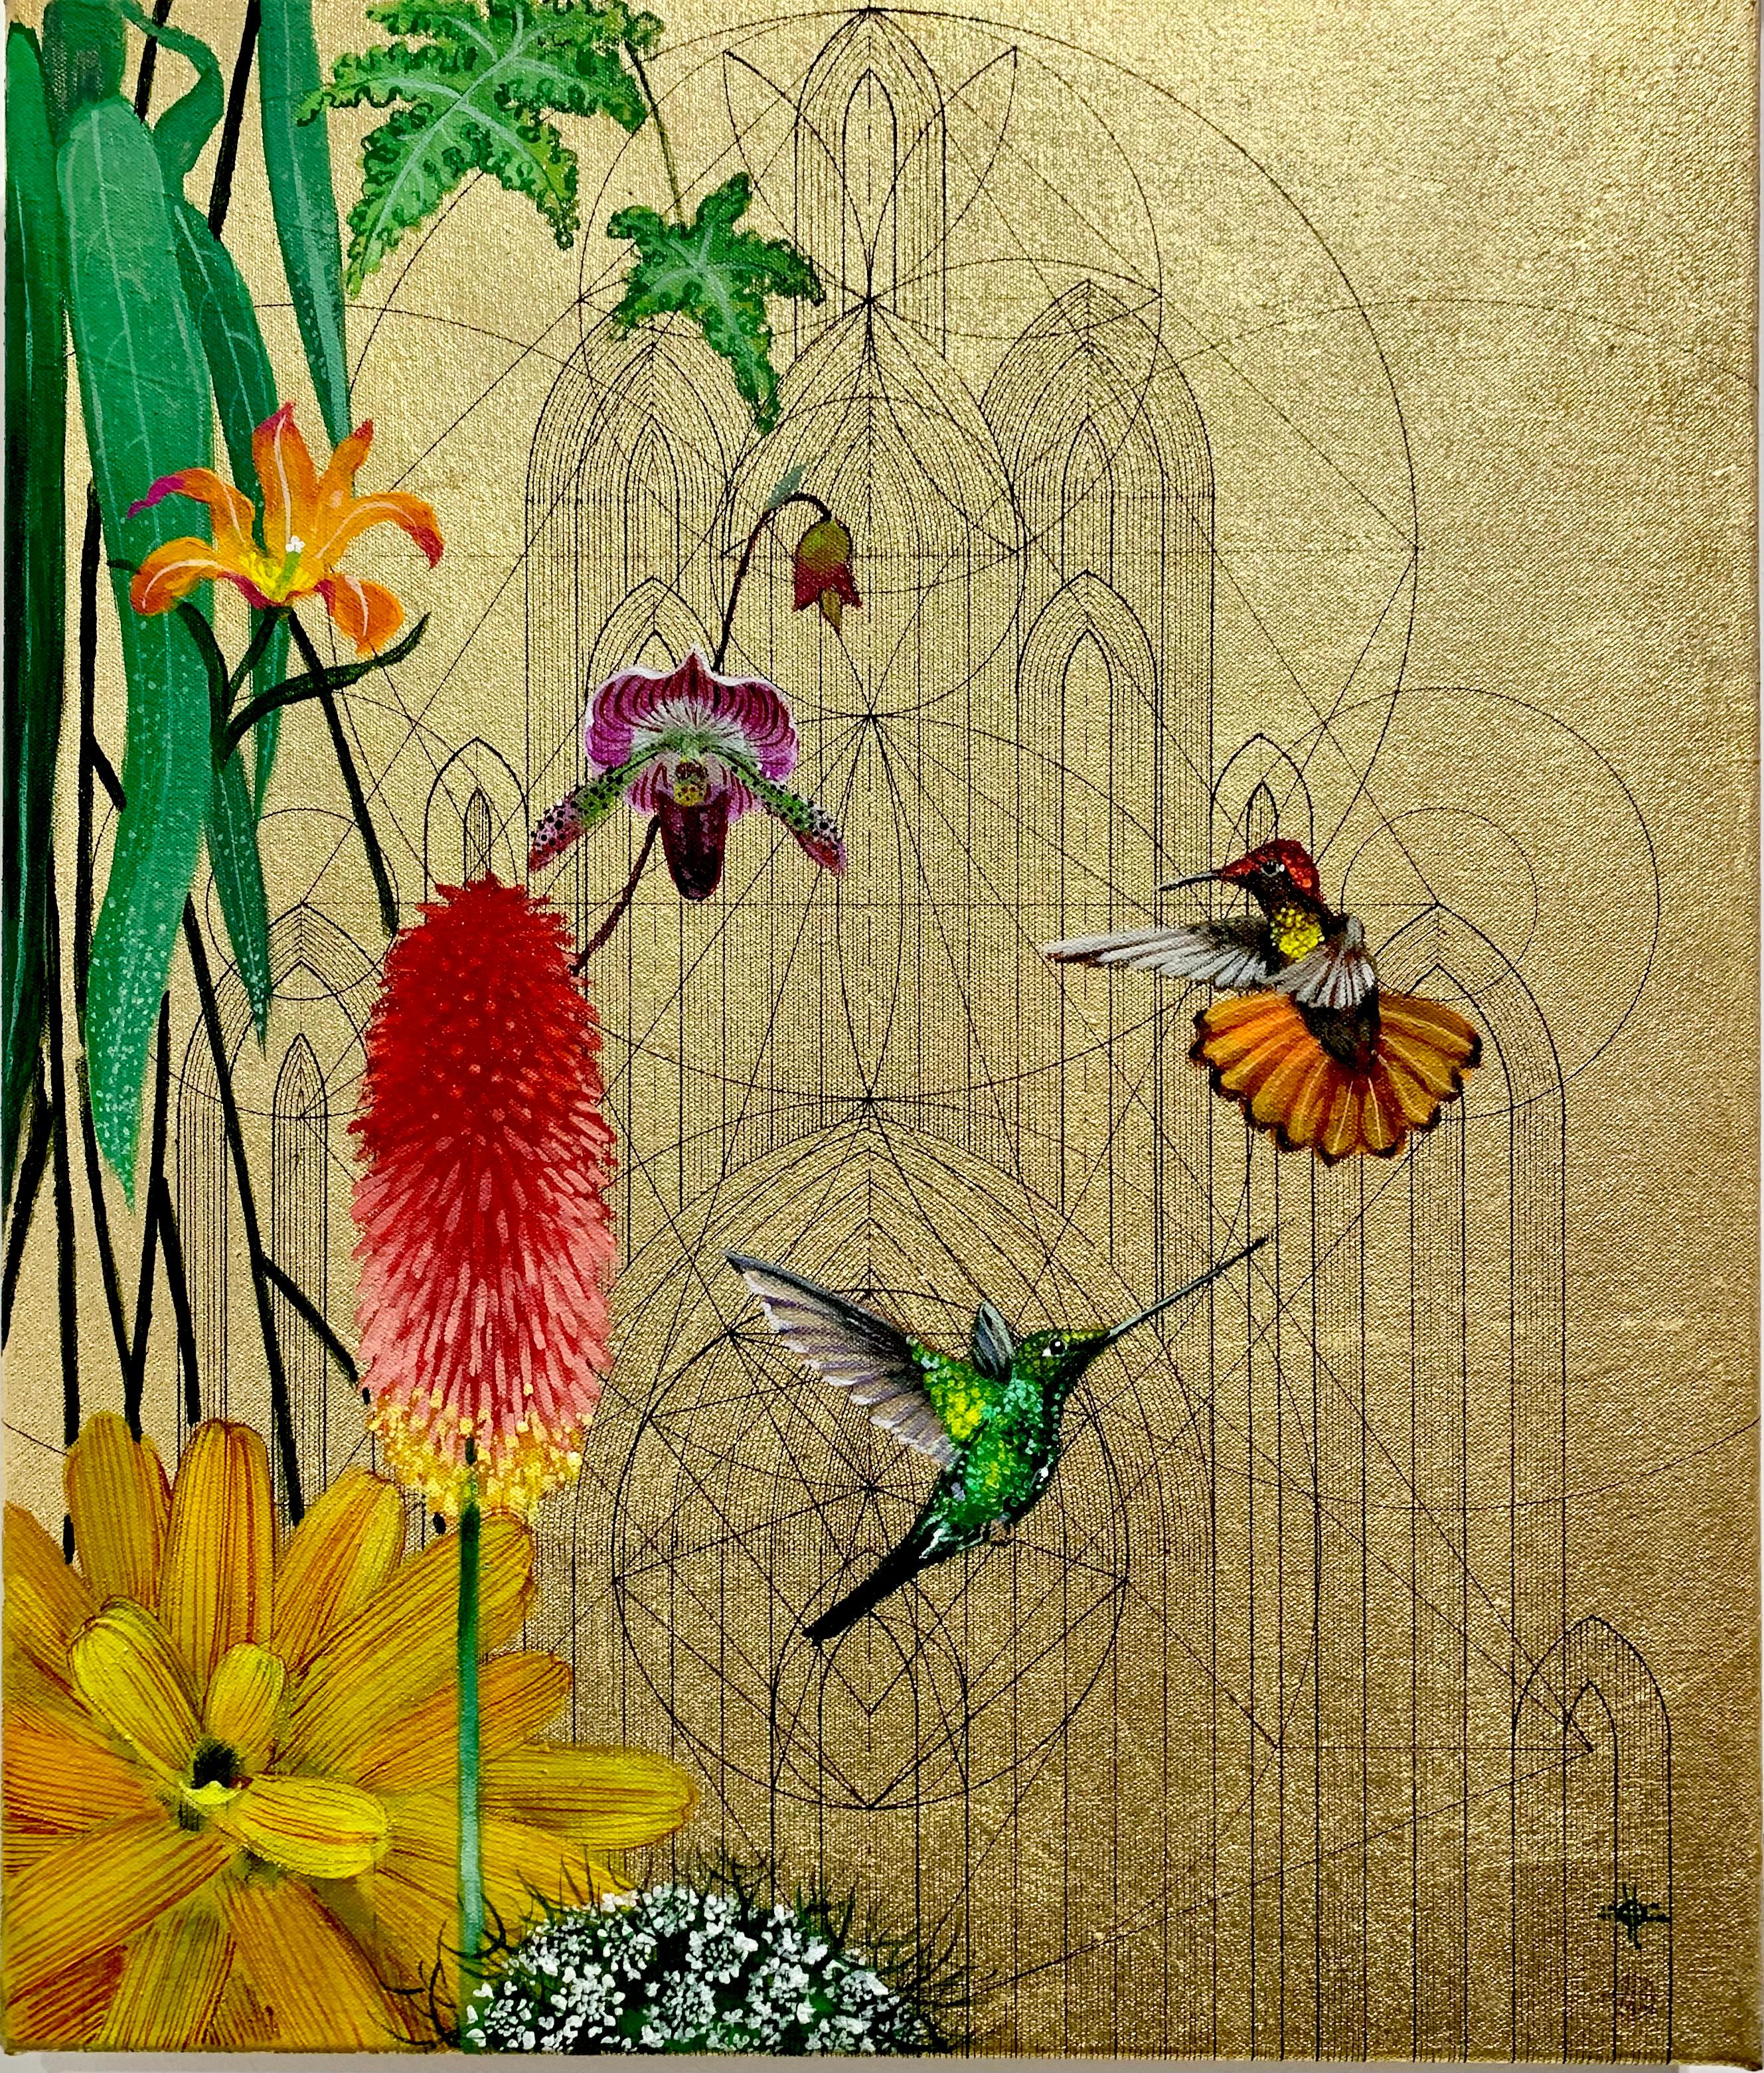 Animal Painting Keng Wai Lee - Aurum 20 - Peinture acrylique, florale, colorée, tropicale, toile